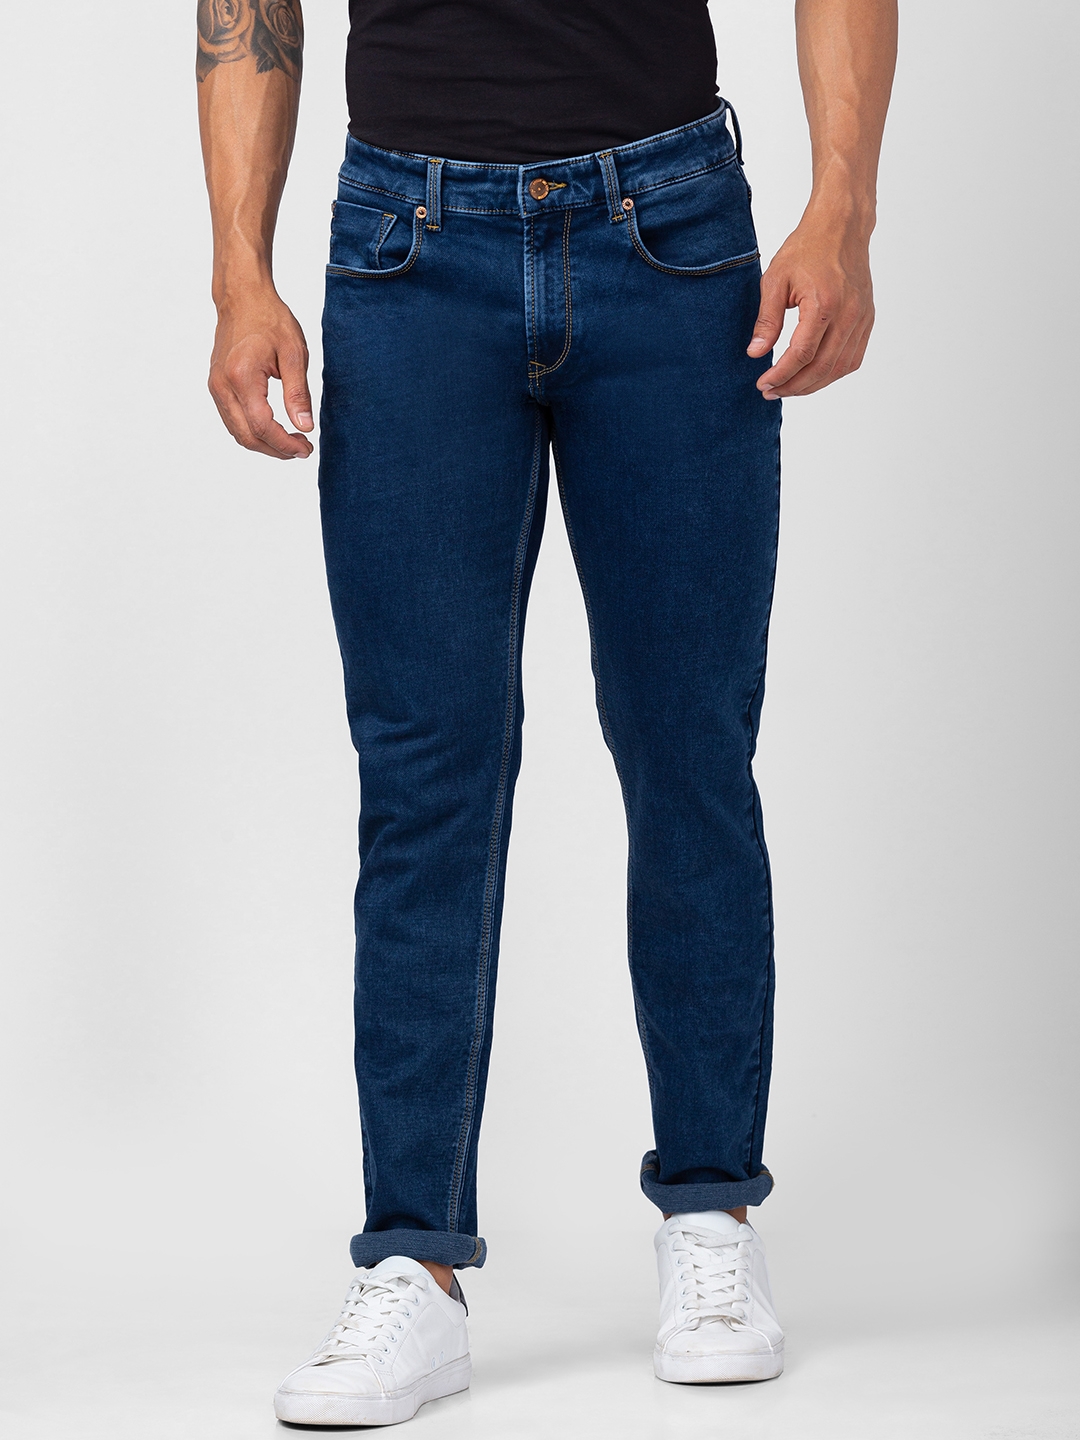 spykar | Men's Blue Cotton Jeans 0